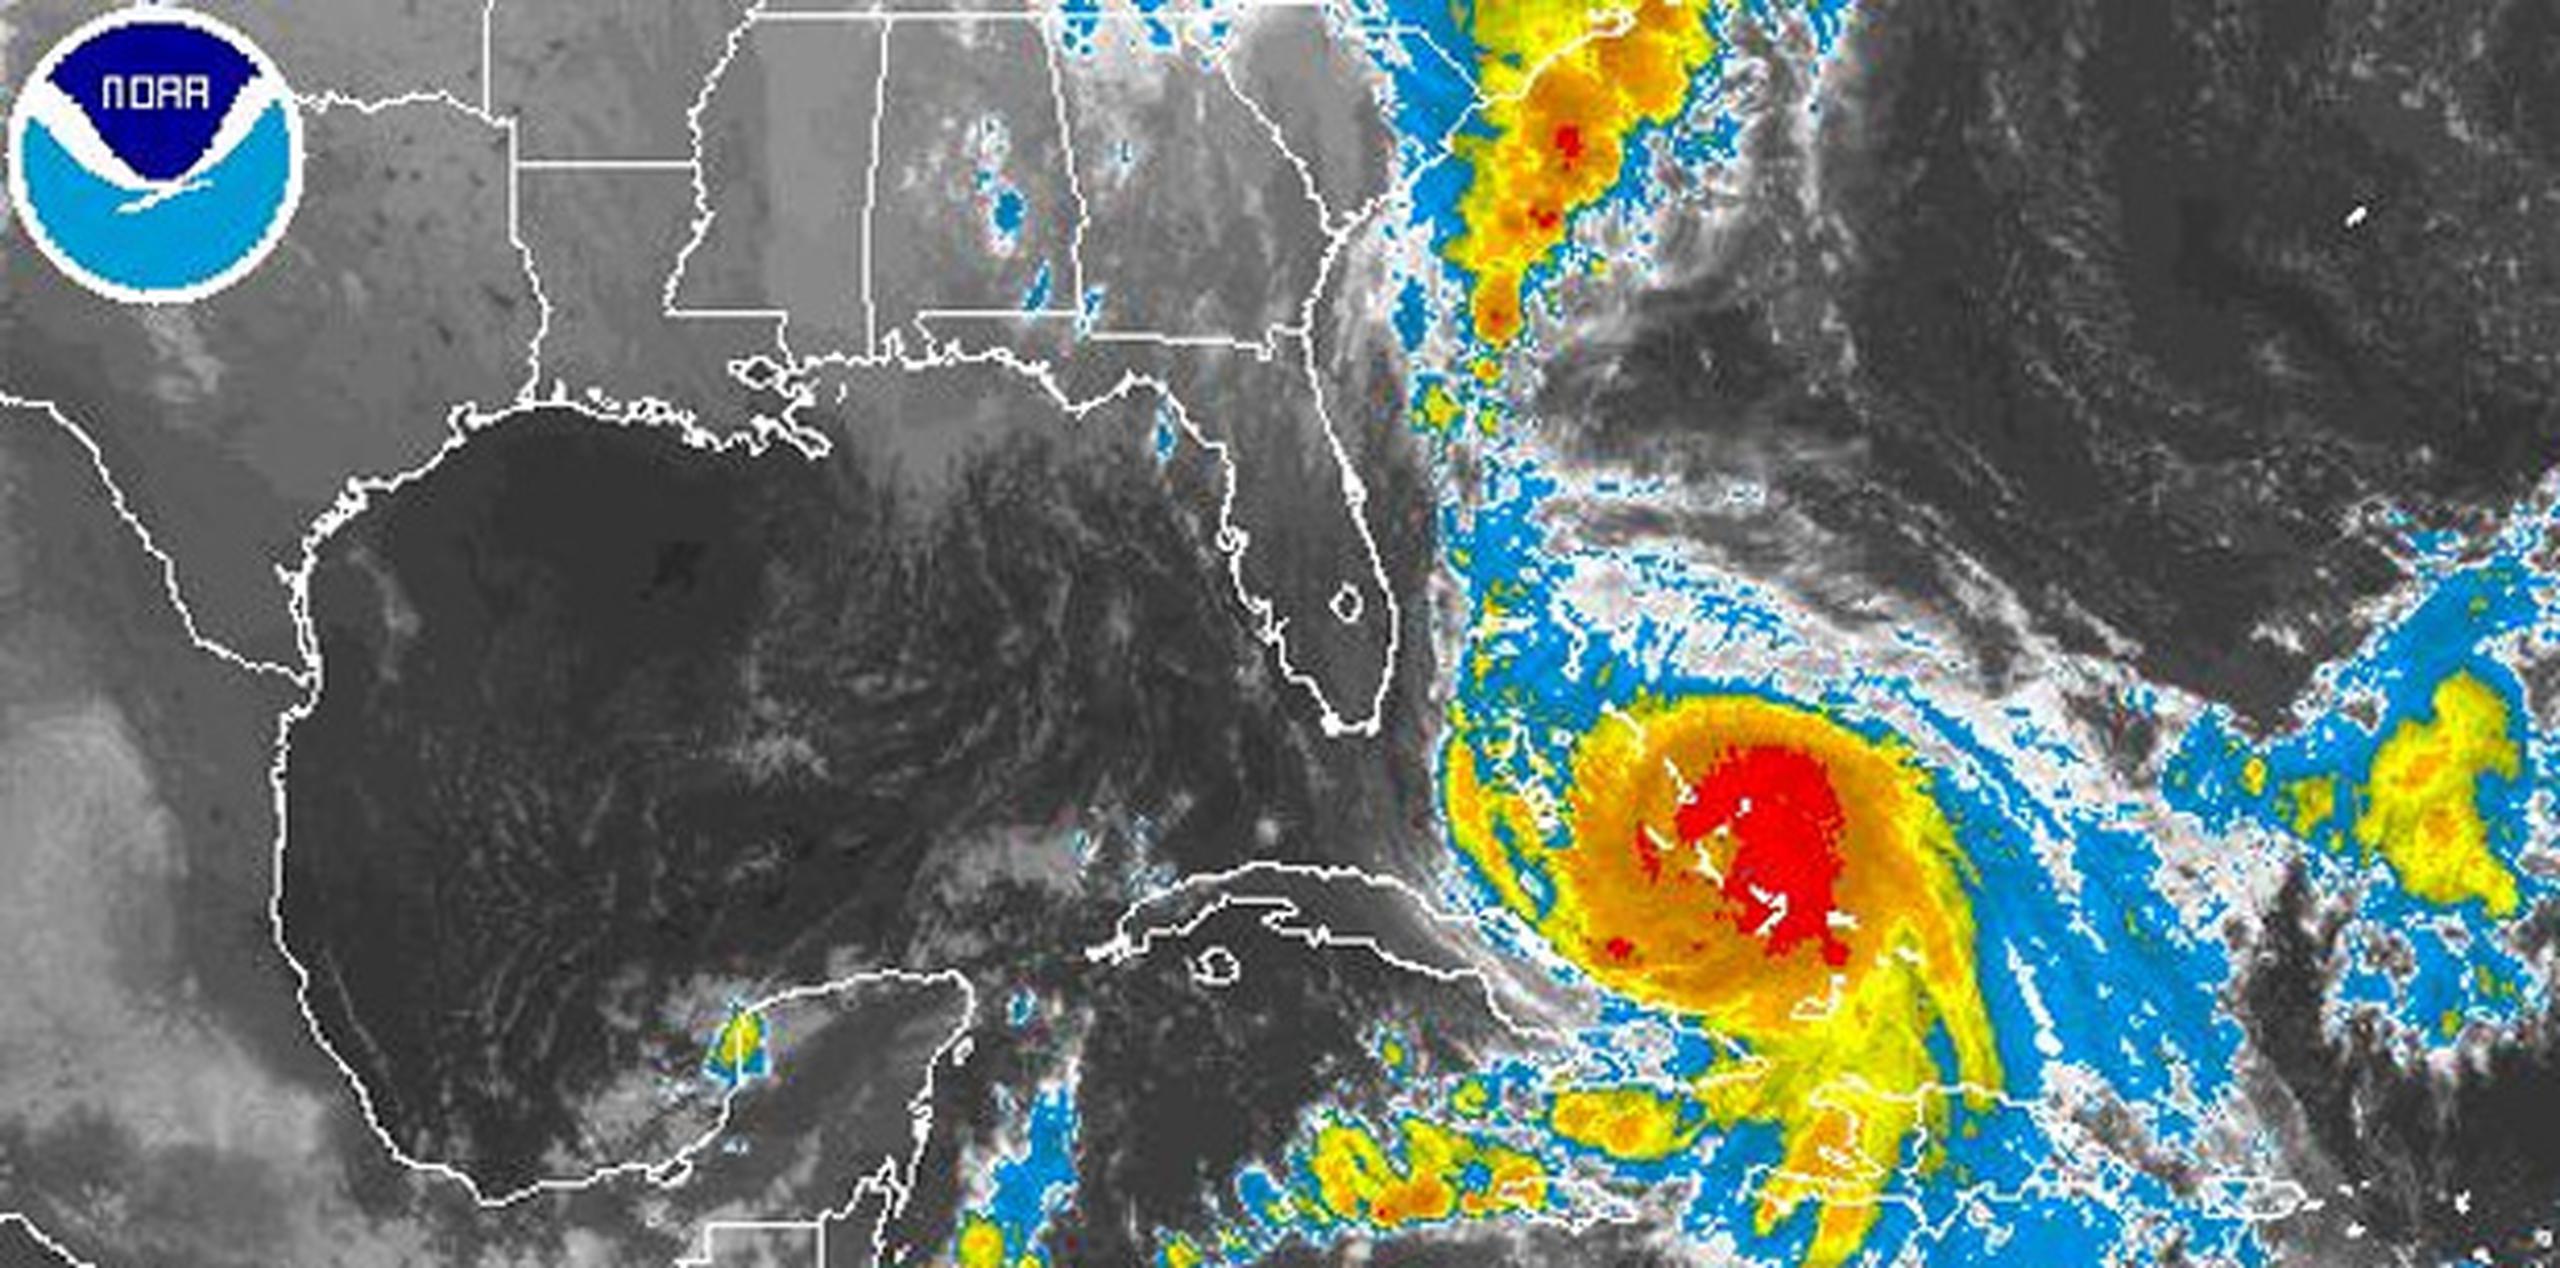 El Centro Nacional de Huracanes indicó que Joaquín comenzará a acelerar su avance hacia el norte esta tarde, seguido de un giro hacia el noreste. (NOAA)